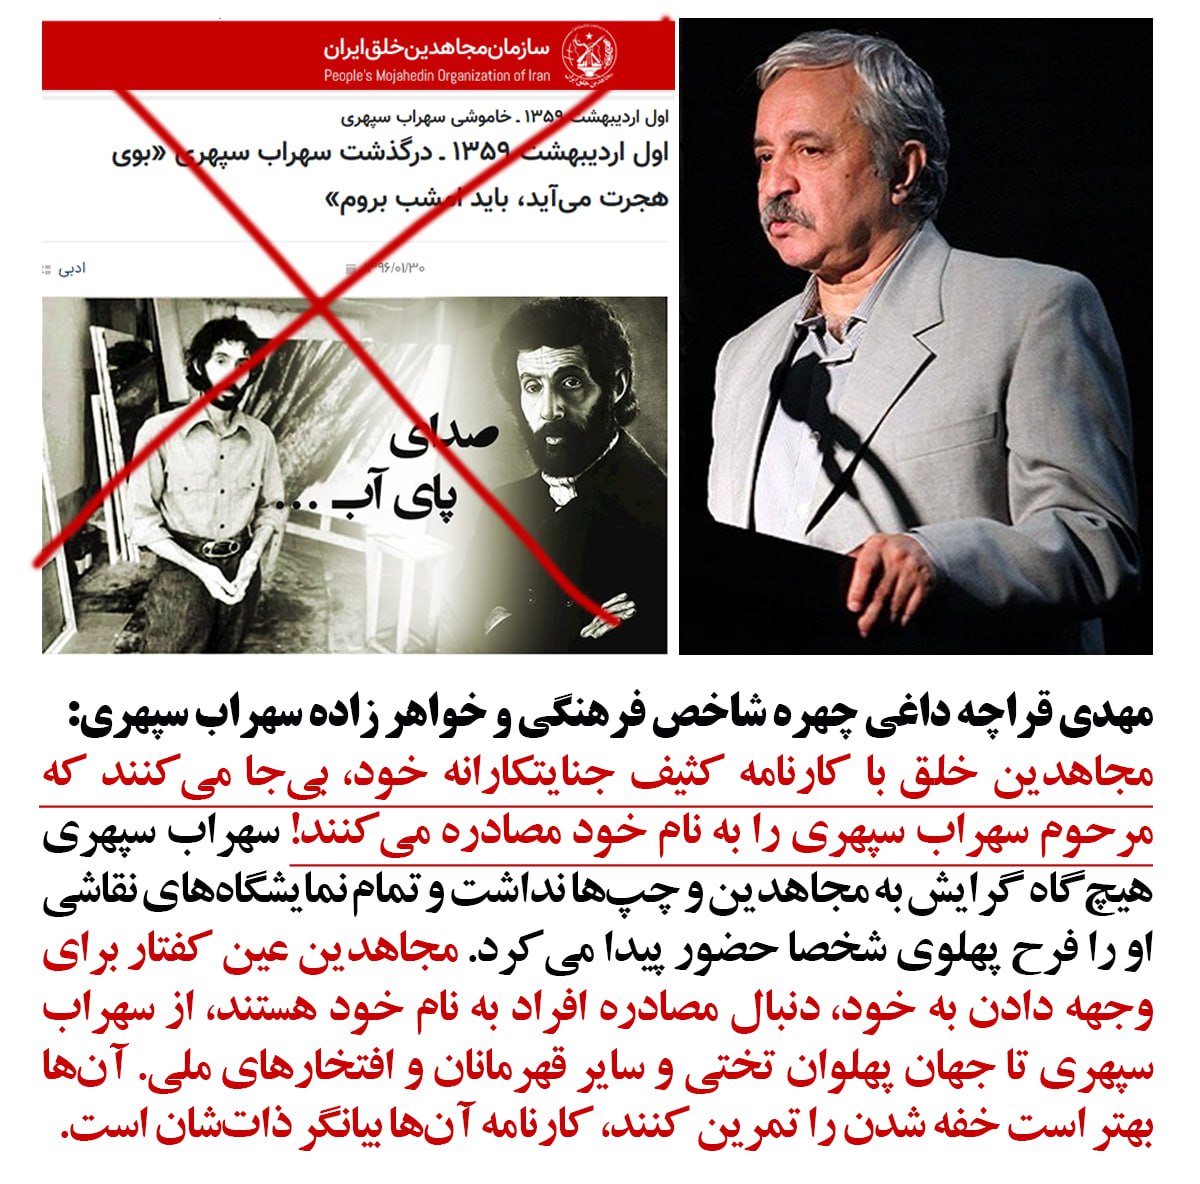 مجاهدین خلق با کارنامه کثیف جنایتکارانه خود، بی جا می کنند که مرحوم سهراب سپهری را به نام خود مصادره می کنند!